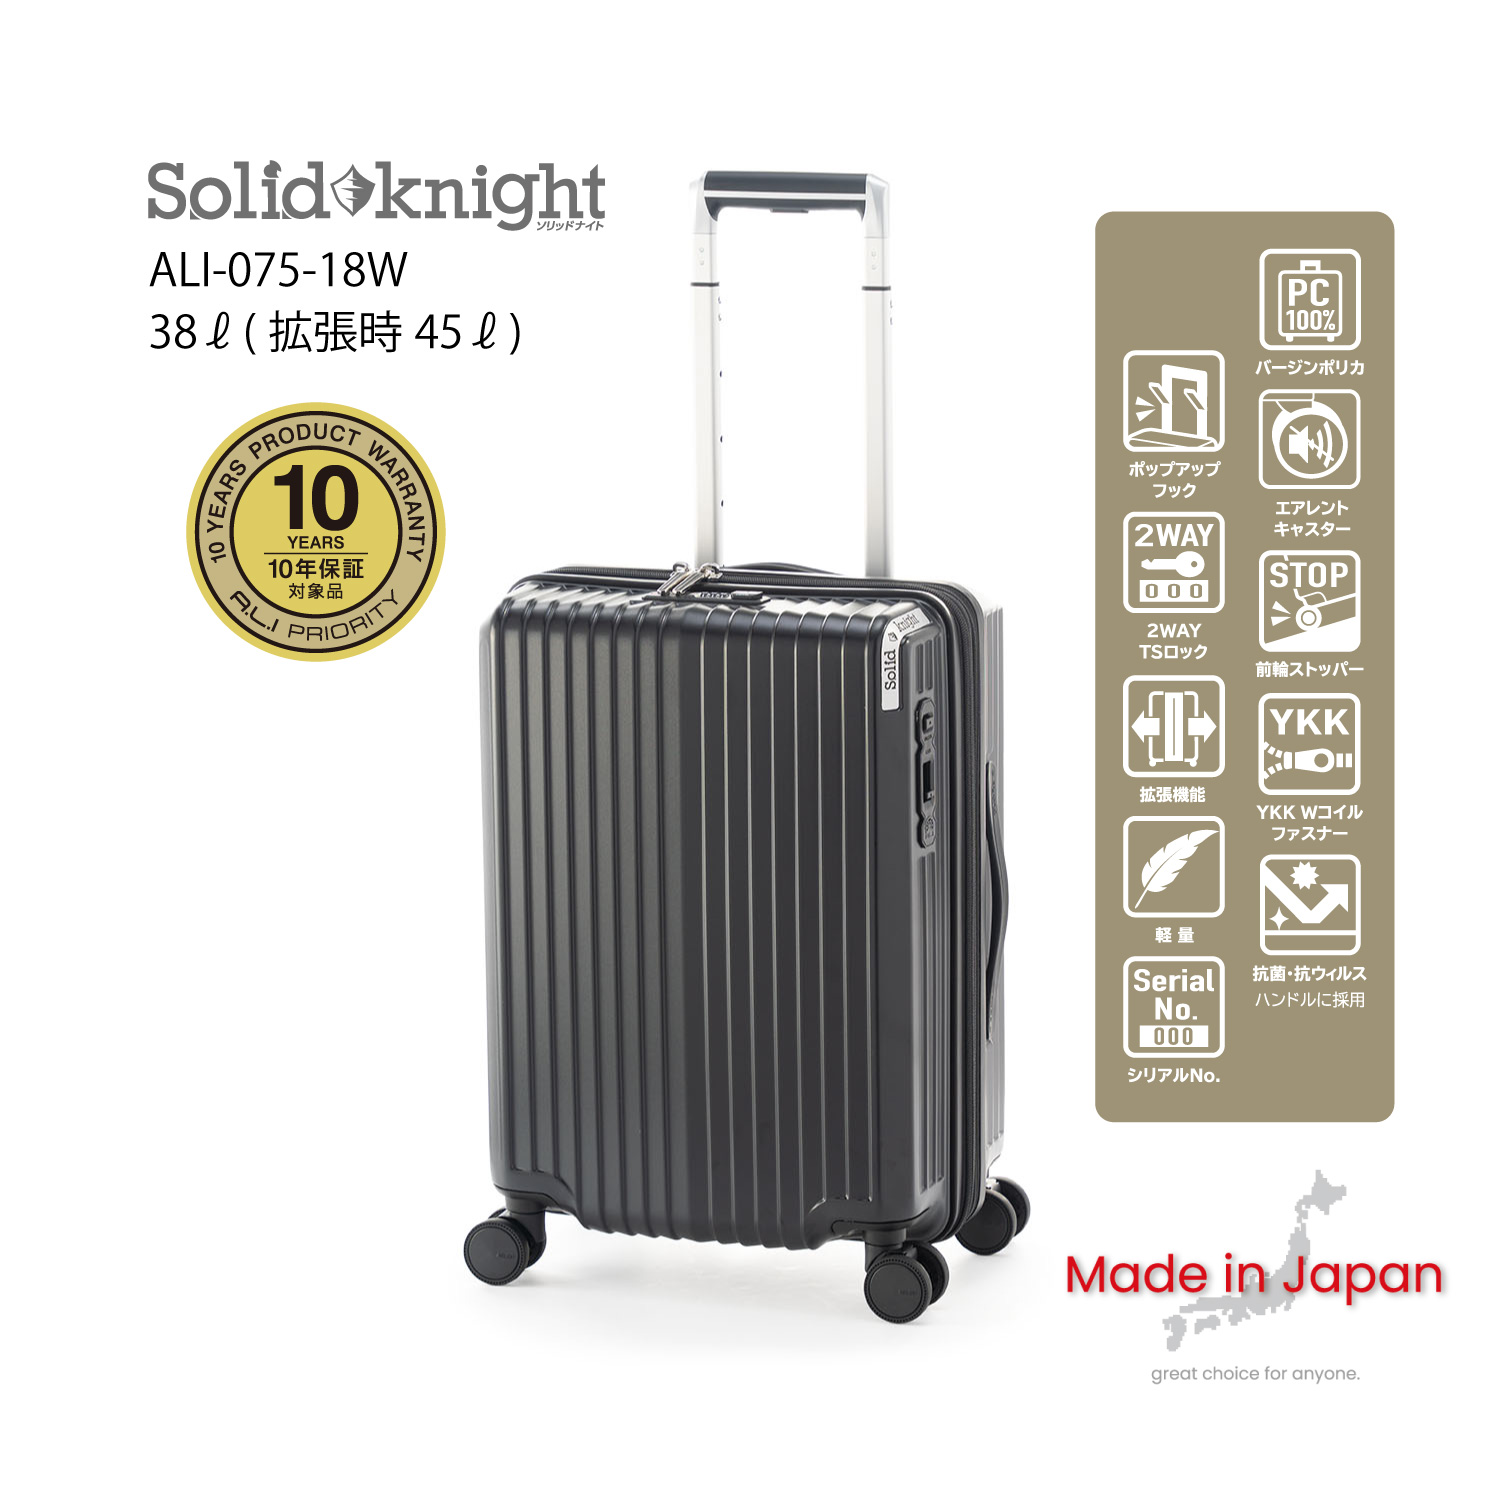 機内持ち込みサイズ | アジア・ラゲージ 公式サイト | Asia Luggage Inc.